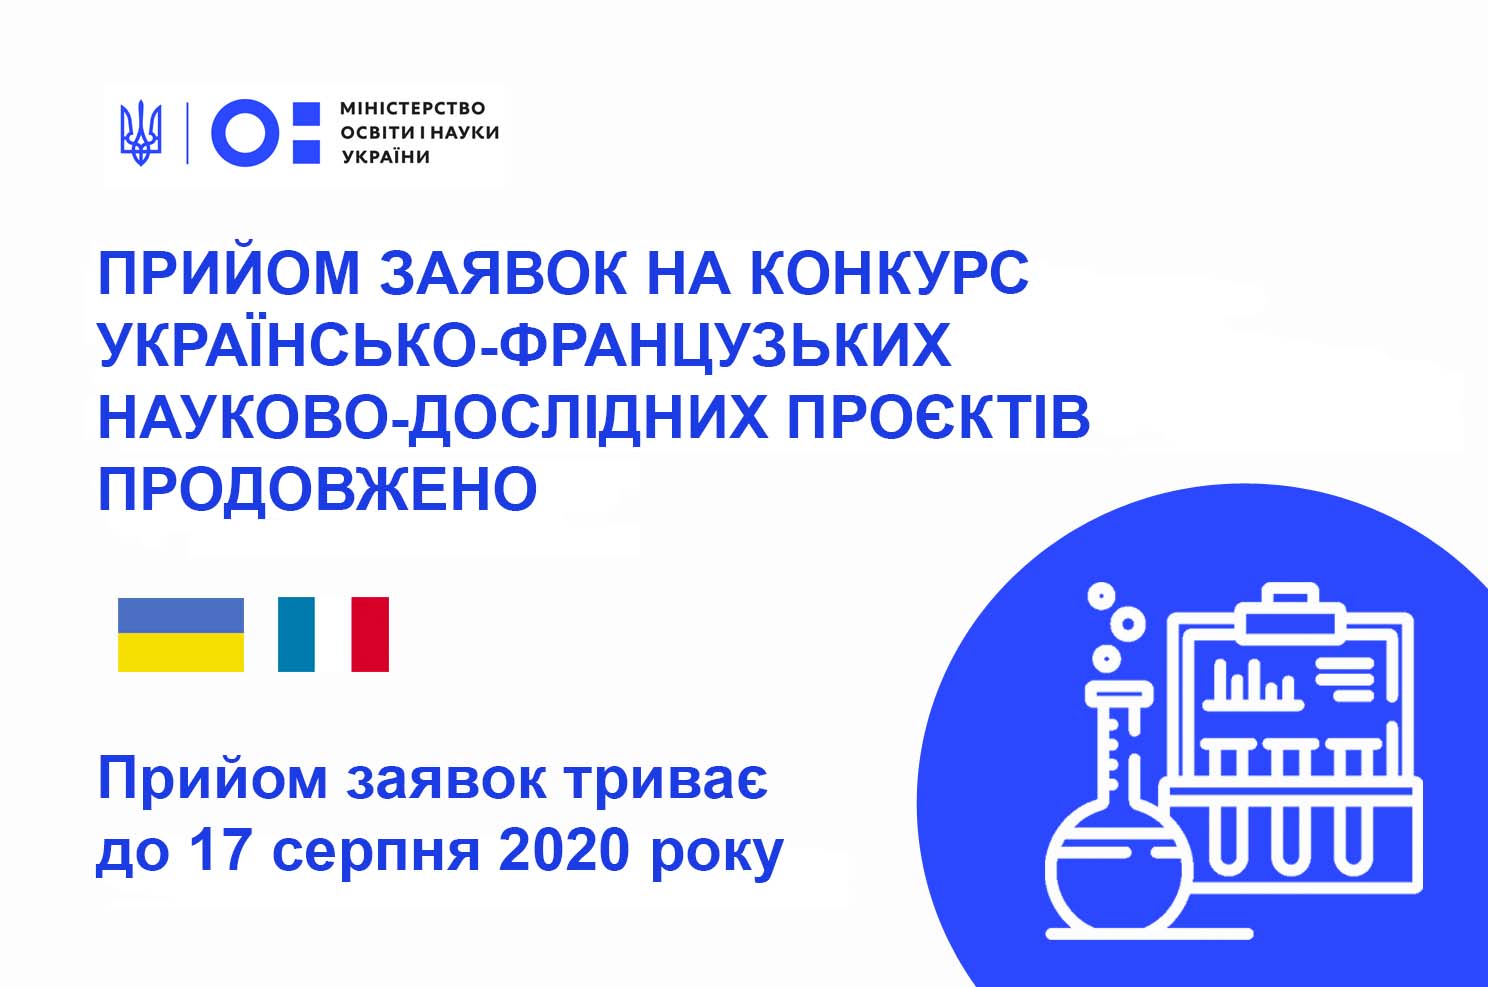 Прийом заявок на конкурс українсько-французьких науково-дослідних проєктів продовжено до 17 серпня